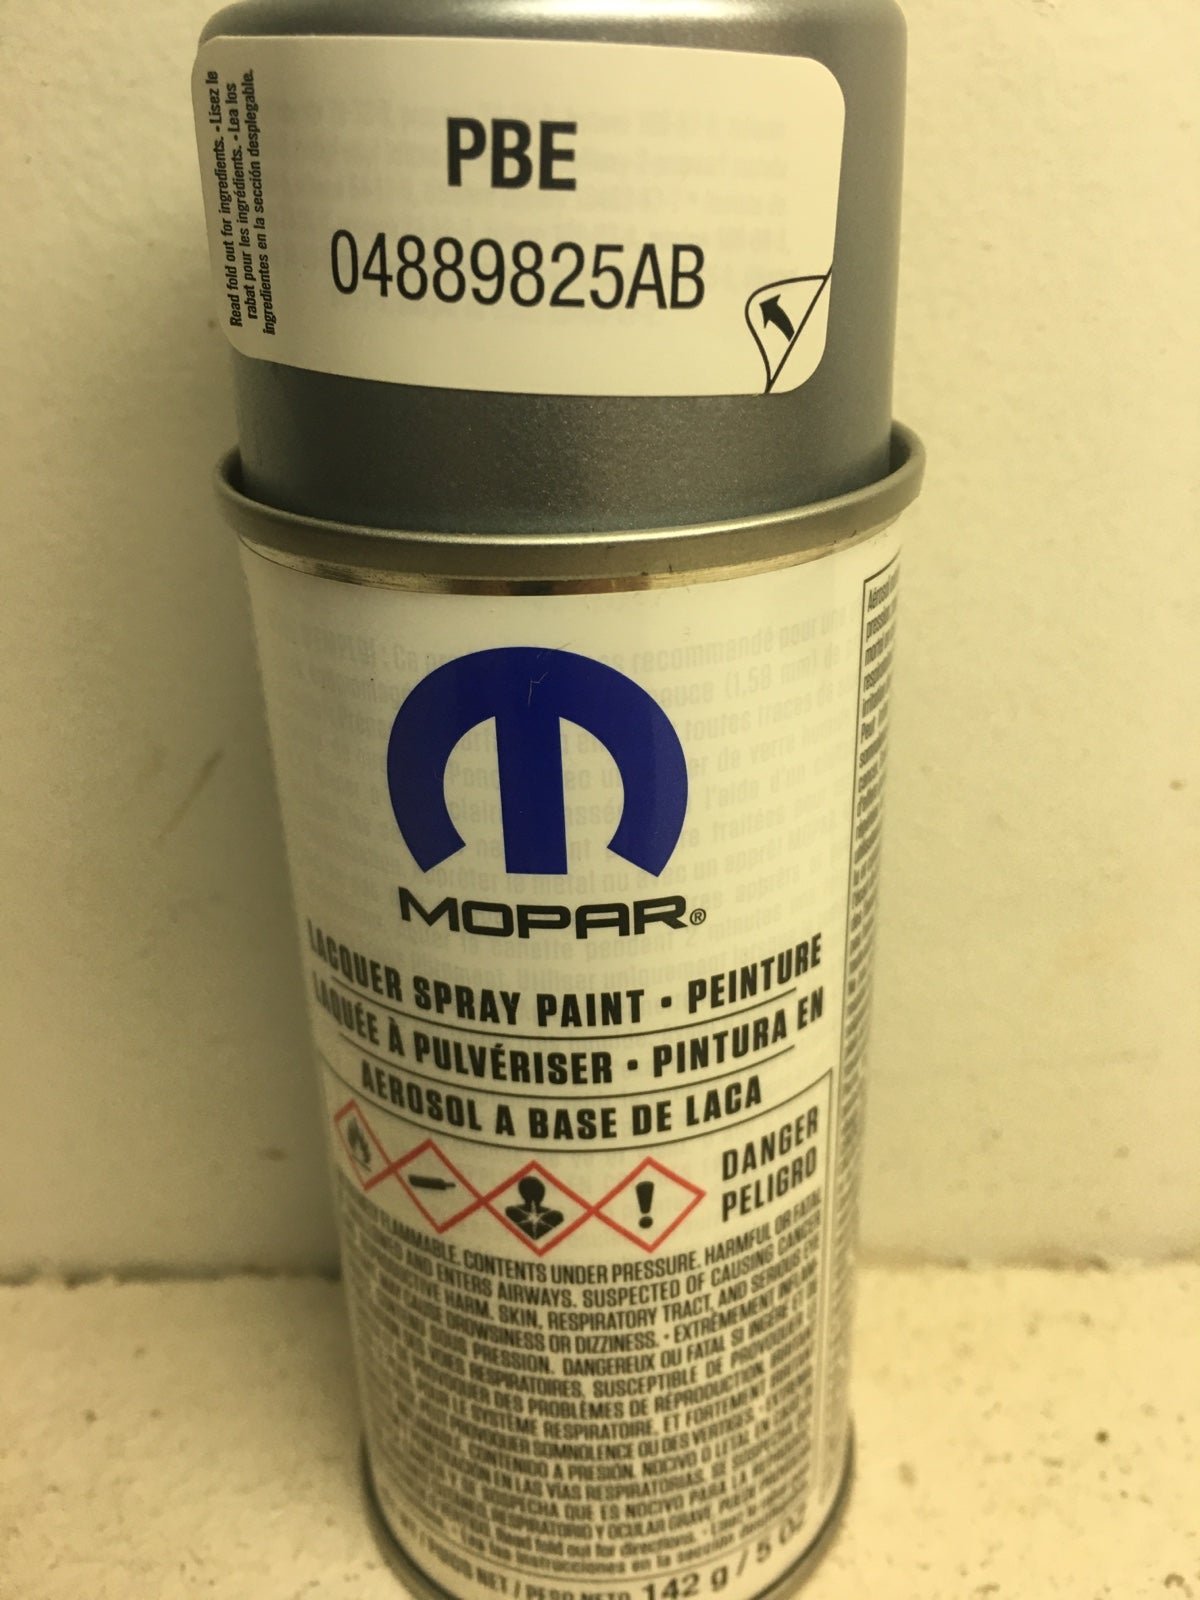 Mopar factory lacquer touch up spray paint PBE QK6wjNMxp